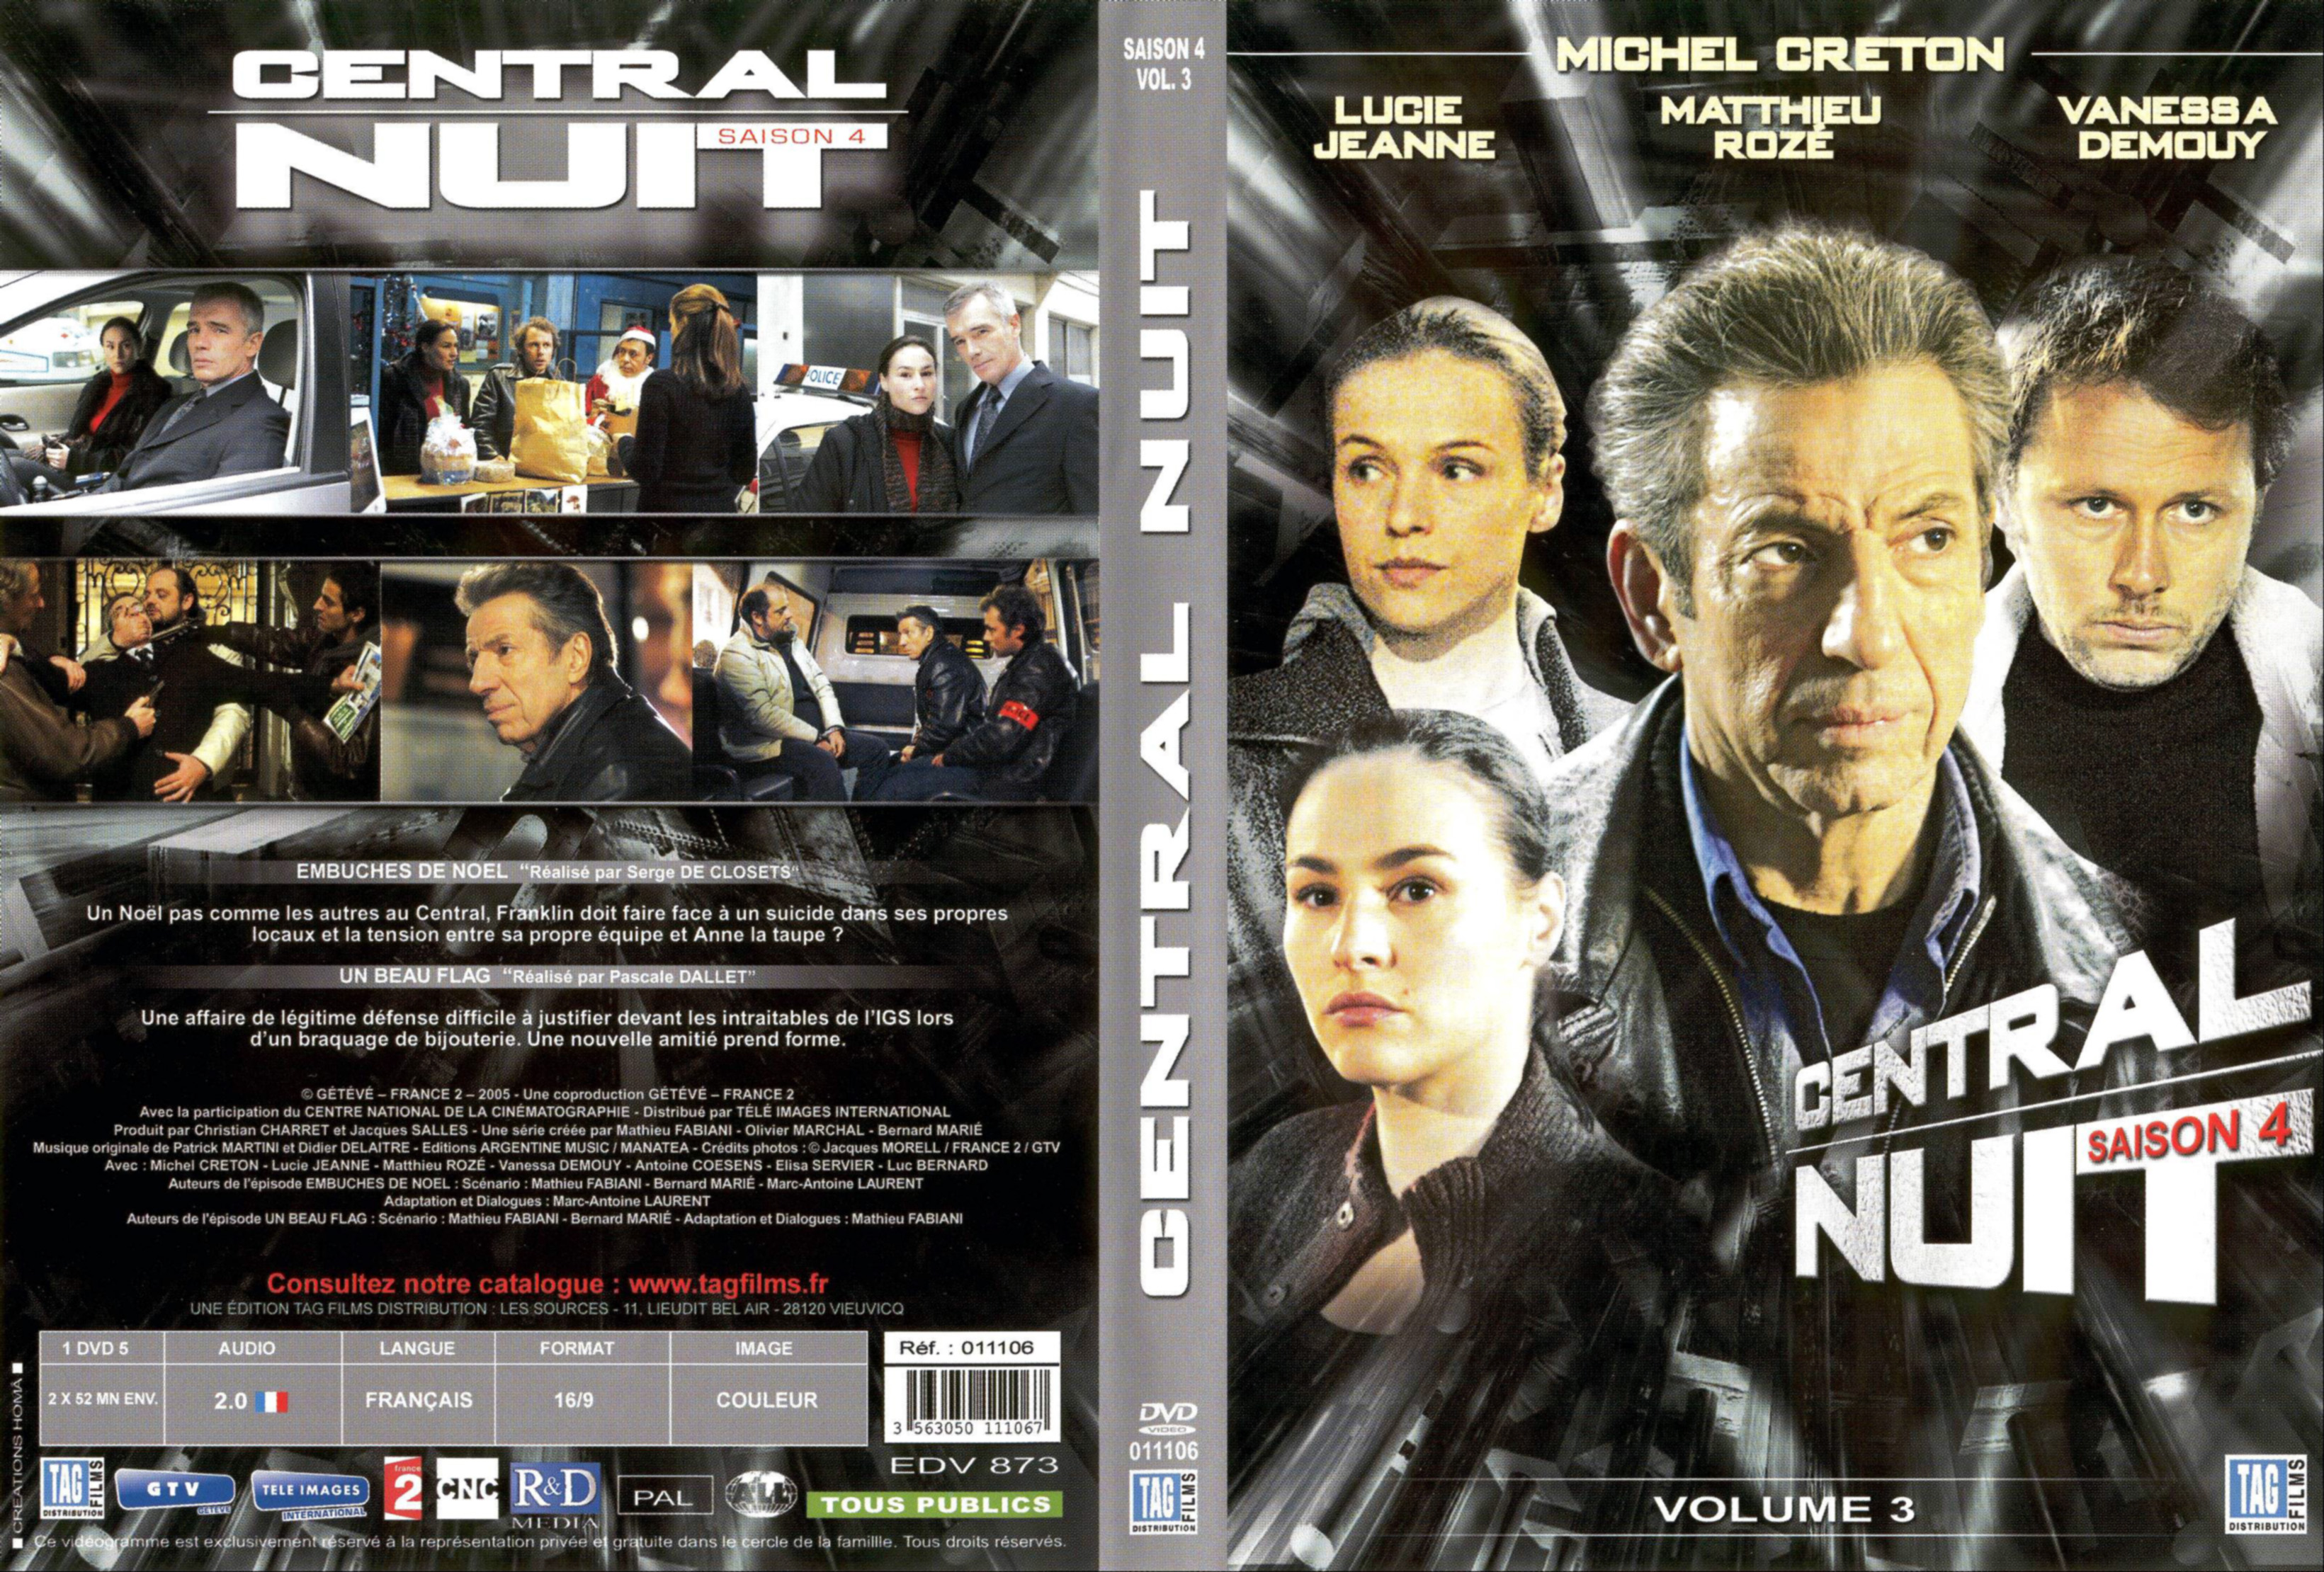 Jaquette DVD Centrale nuit Saison 4 vol 3